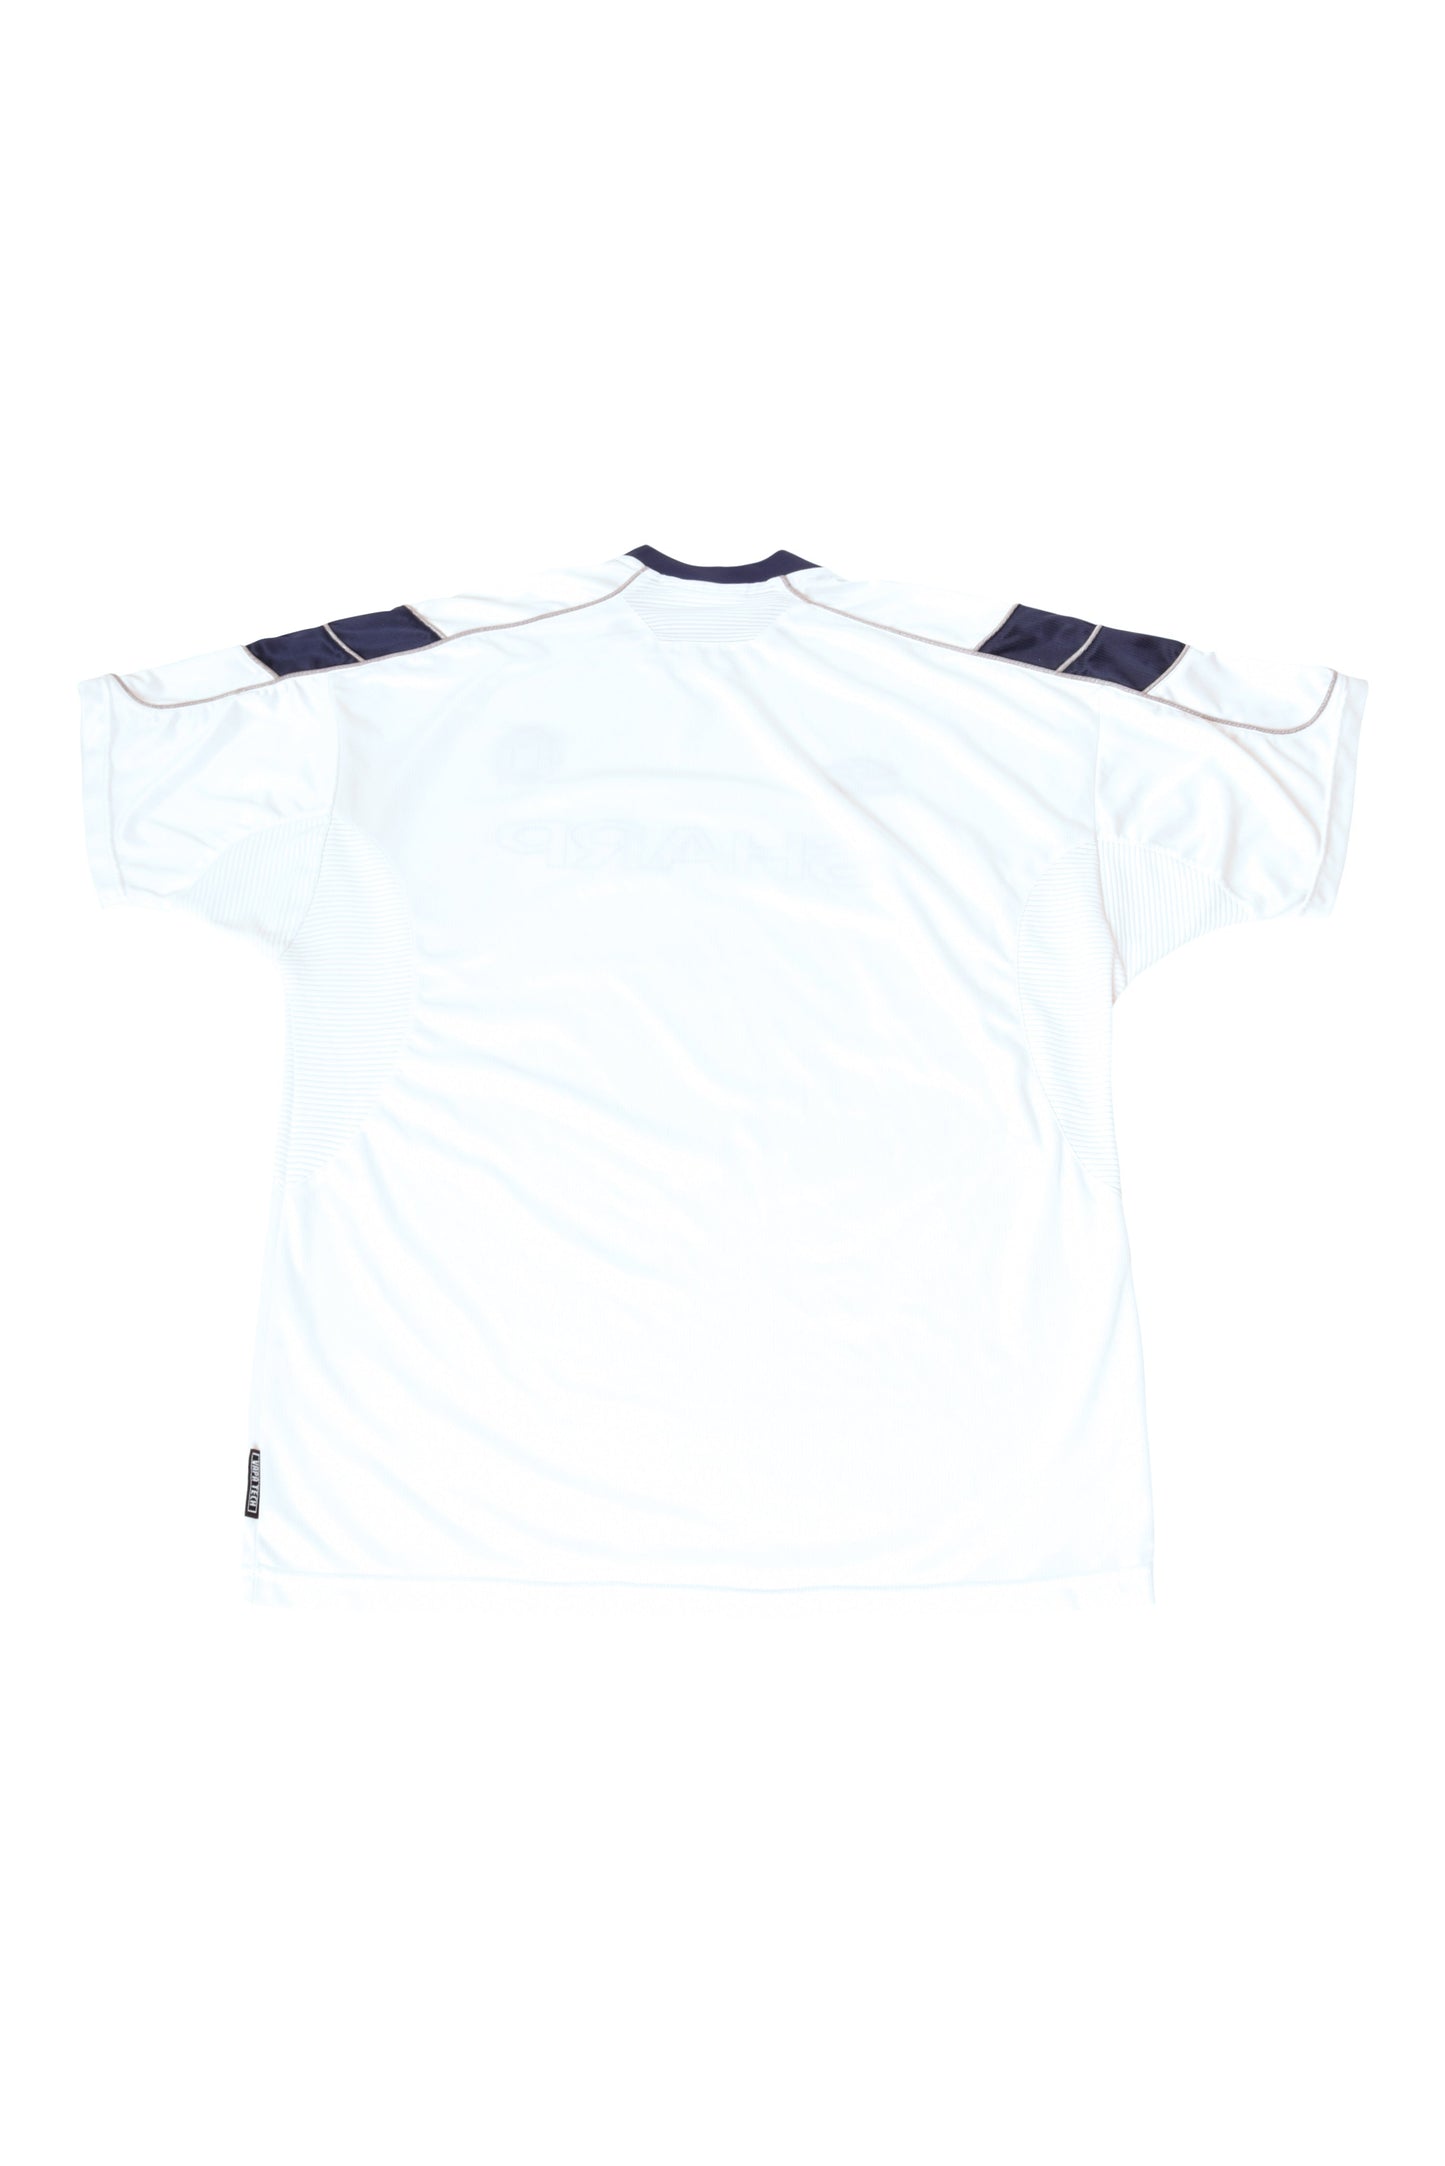 Manchester United Third Football Shirt '99-'00 Sharp Size XL Vapa Tech White